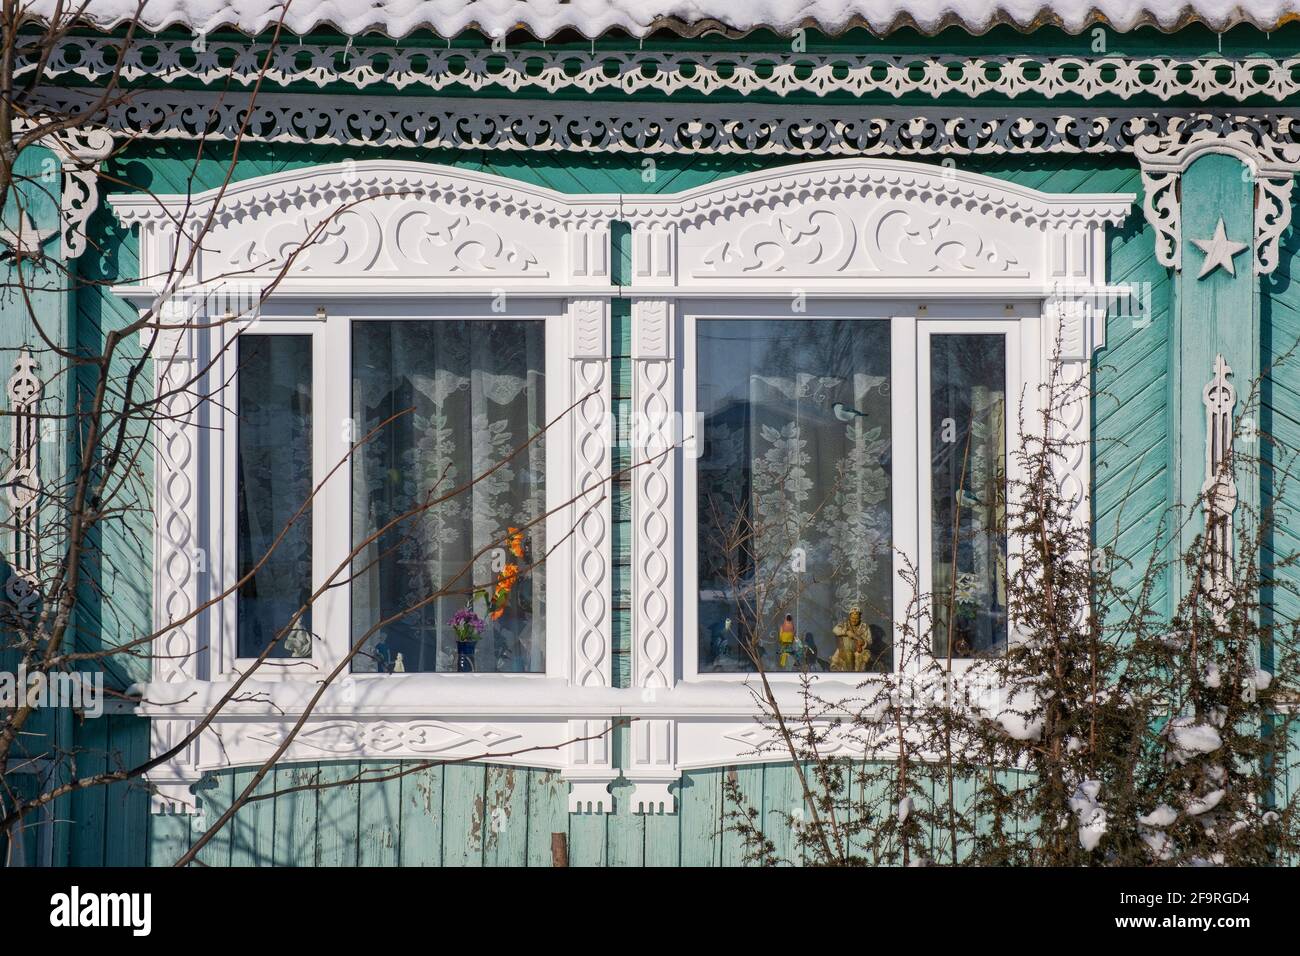 Platband intagliate sulle finestre in stile russo, da vicino, Russia. Foto Stock